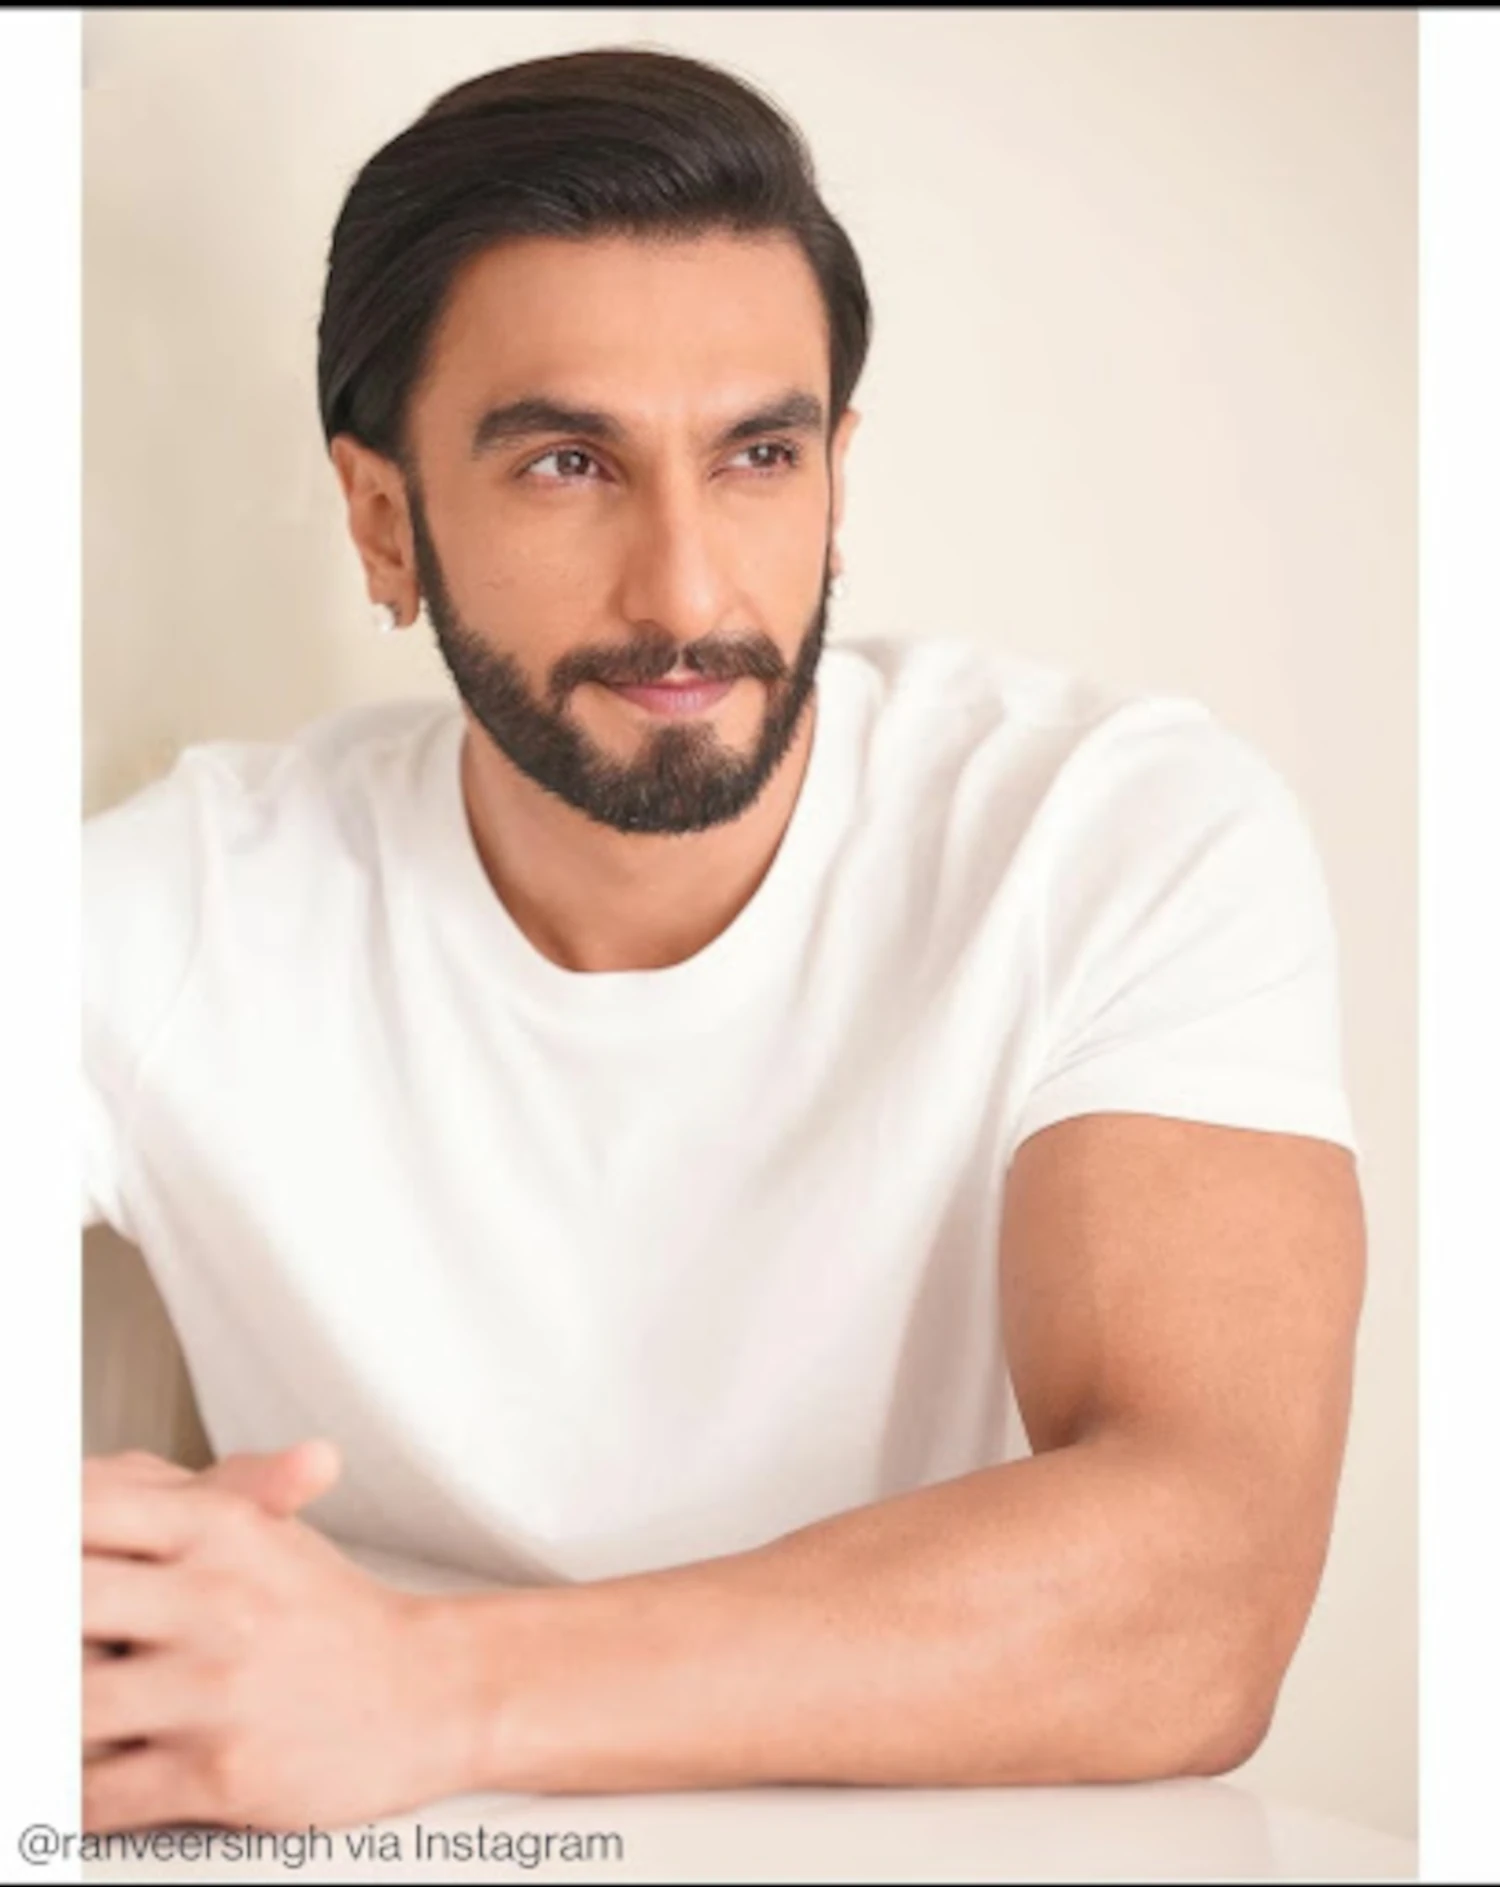 Ranveer Singh looks absolutely elegant in his recent picture